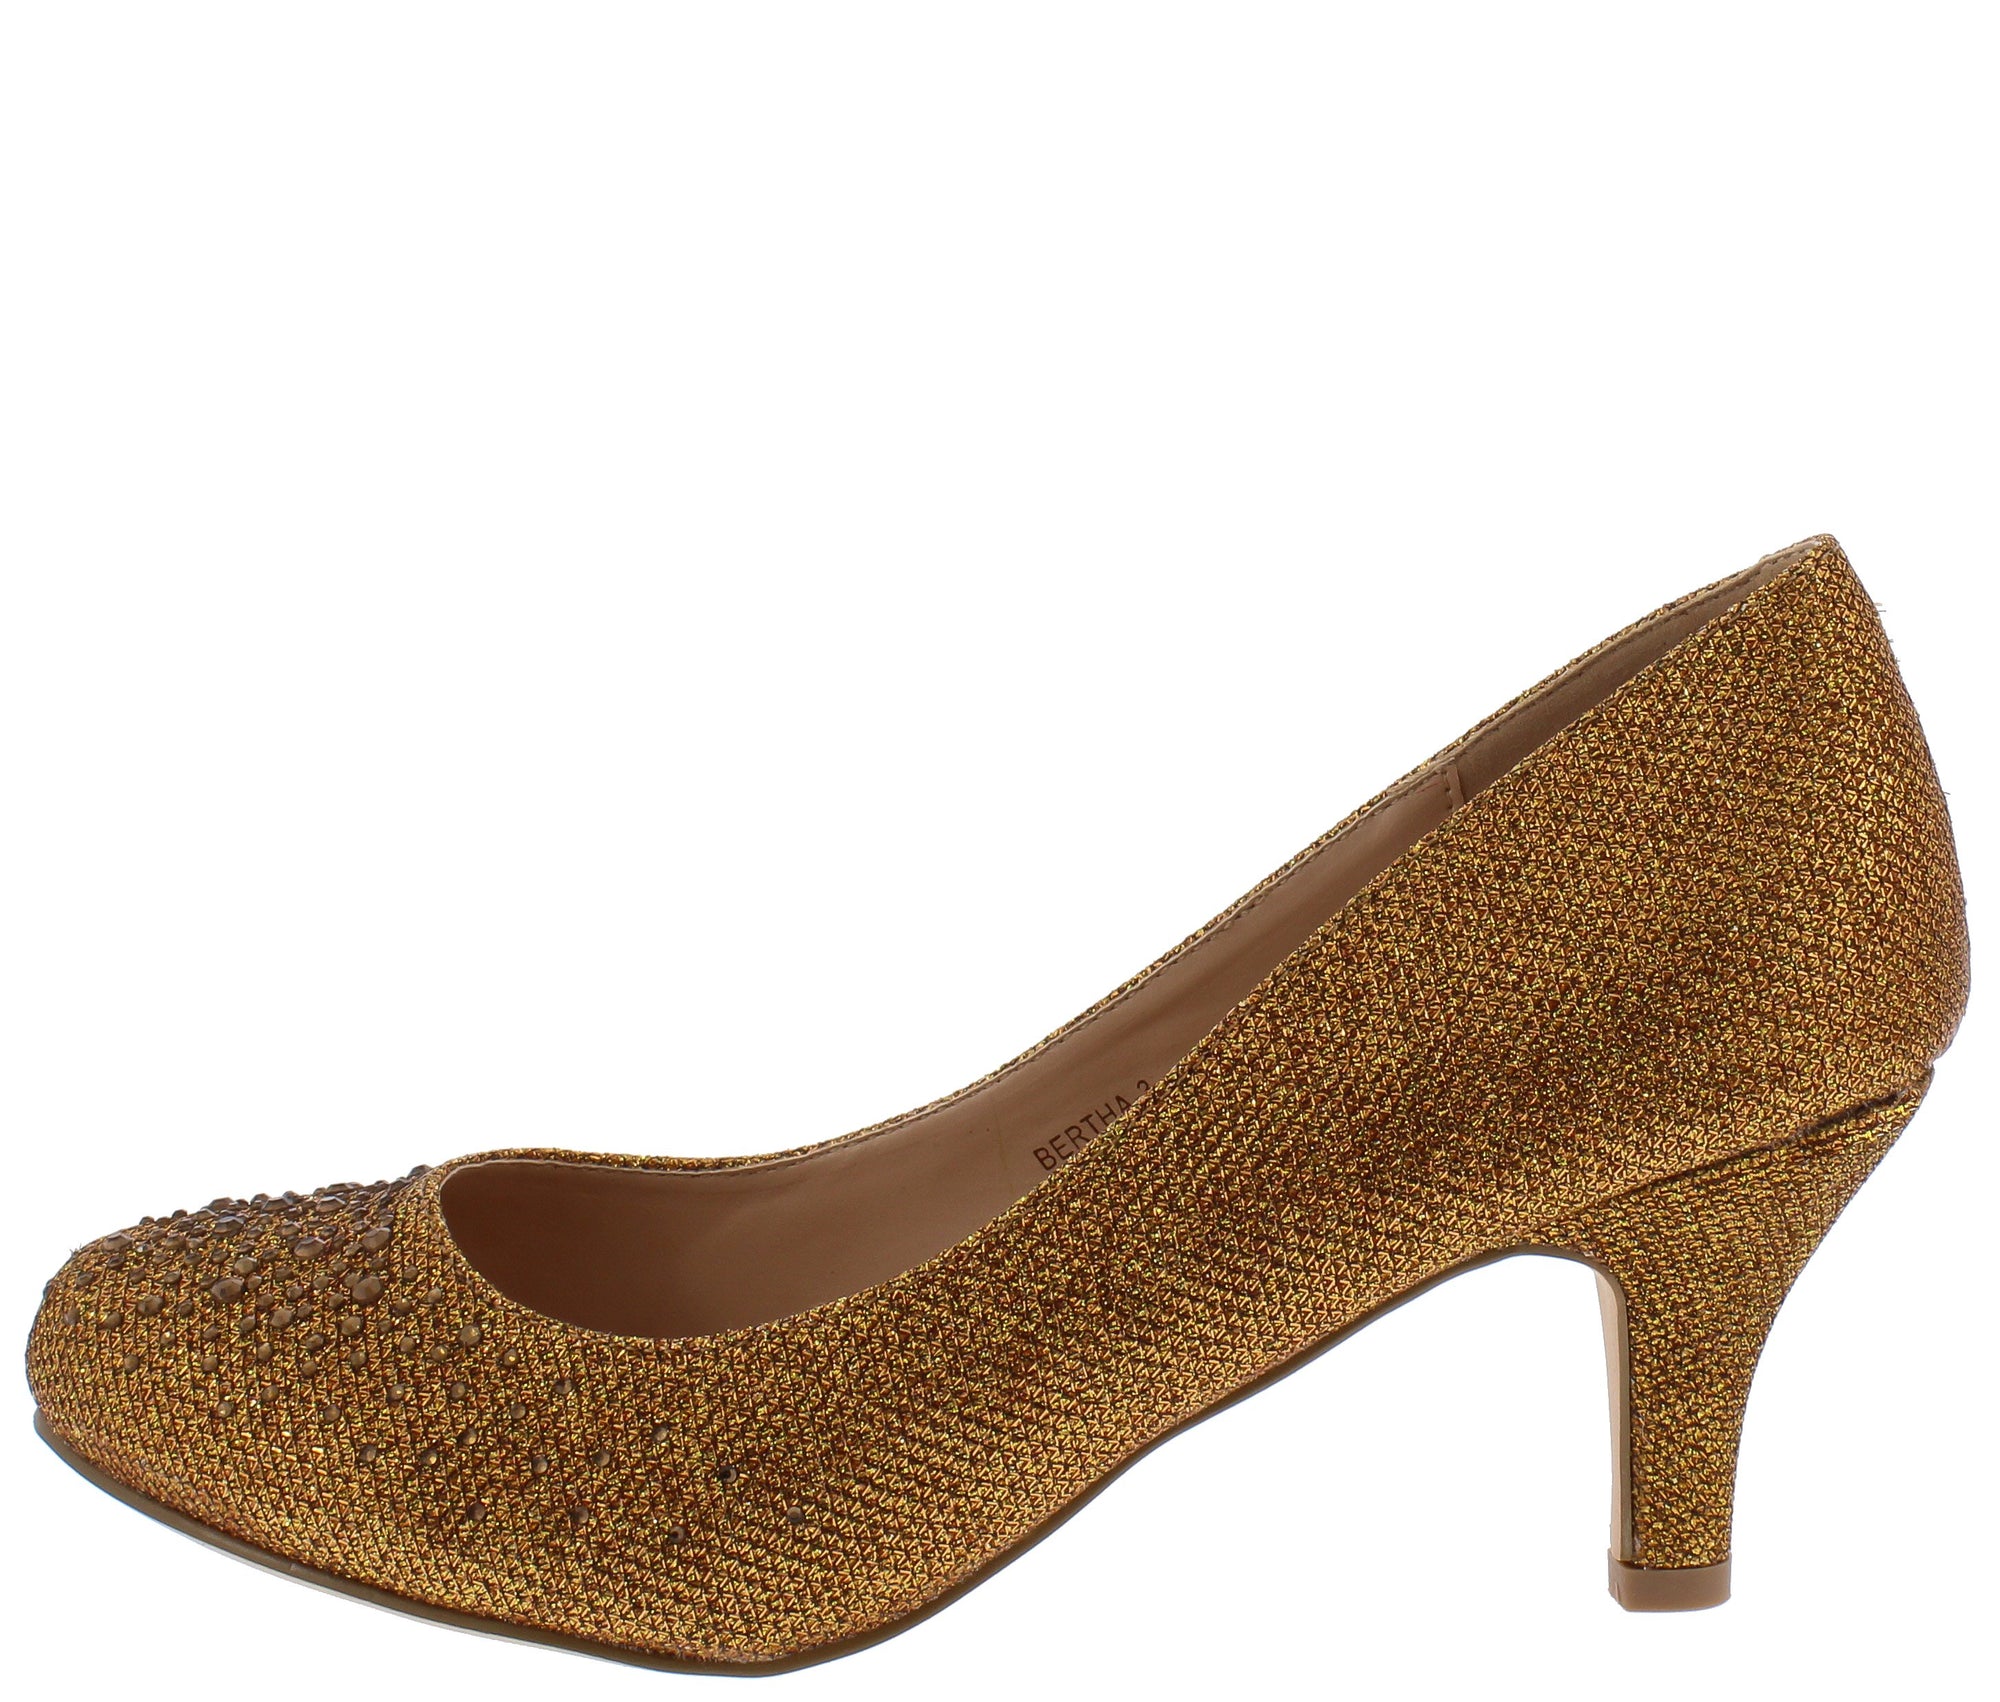 bronze shoes heels